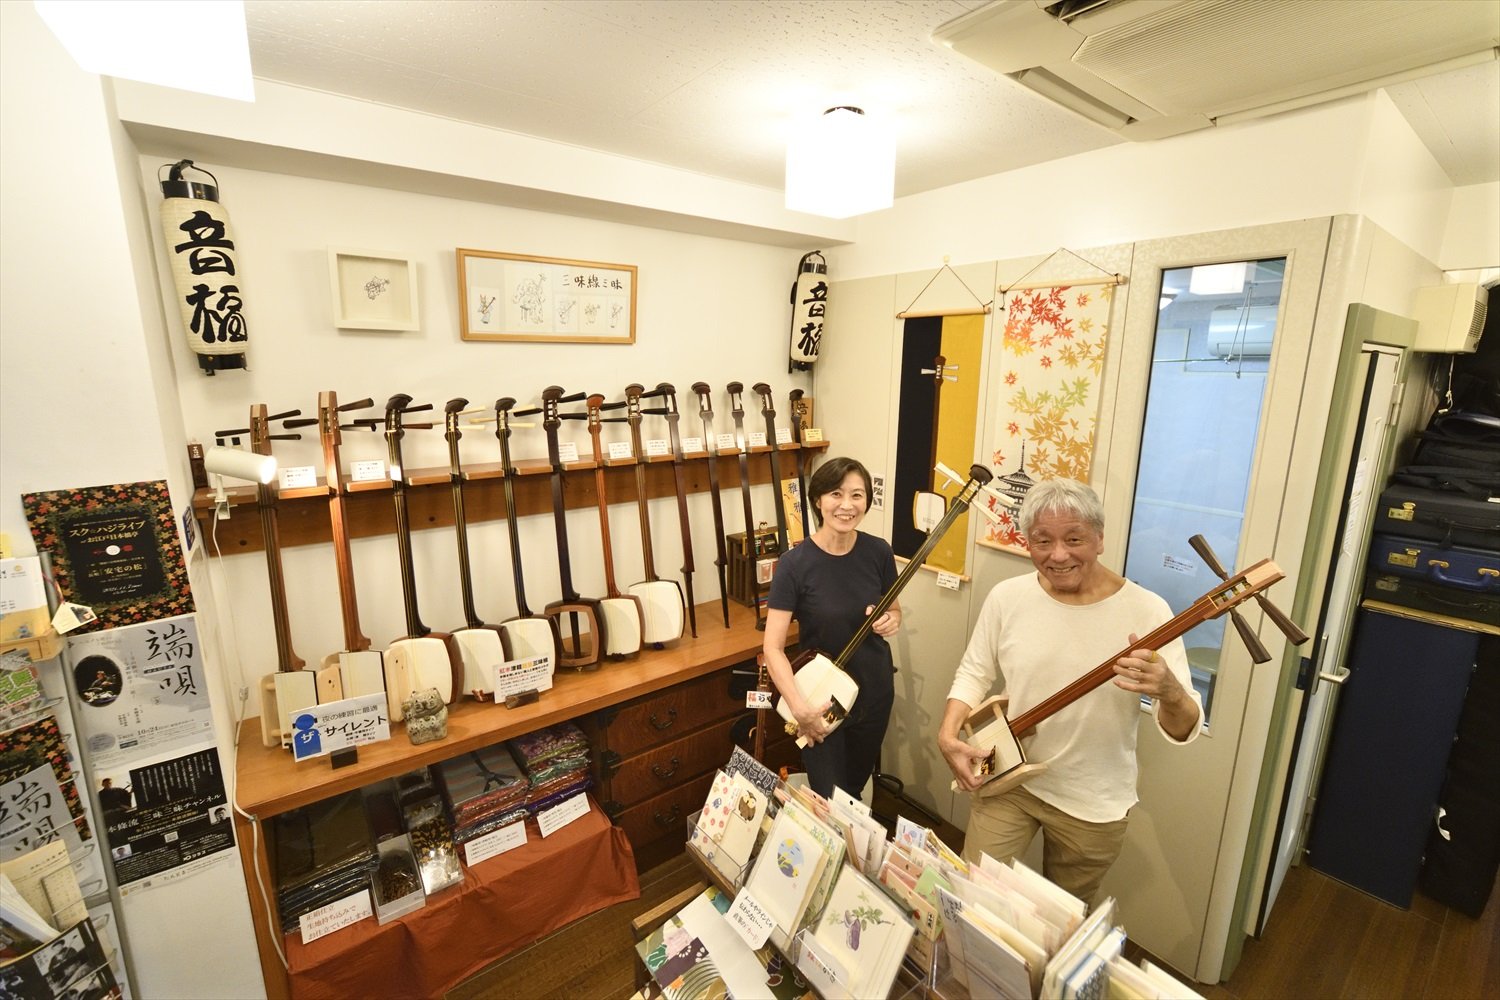 津軽三味線の師匠でもある下村さん（左）と、自宅練習用サイレント三味線を弾く山口さん（右）。「ジャンル・三味線を選ぶ間、レンタルもしてますよー」